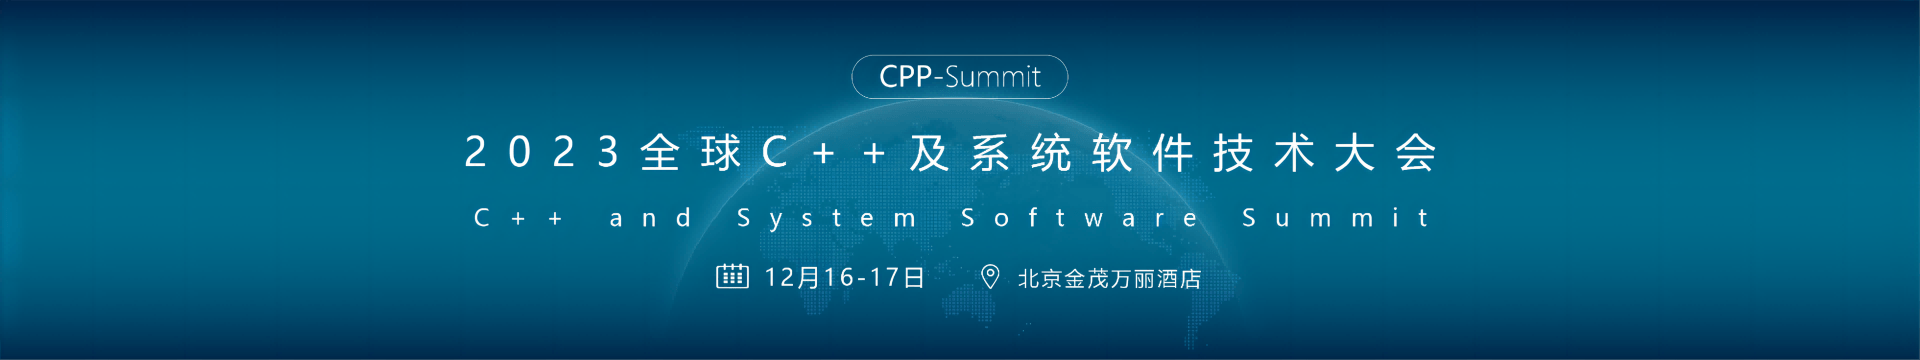 2023全球C++及系统软件技术大会